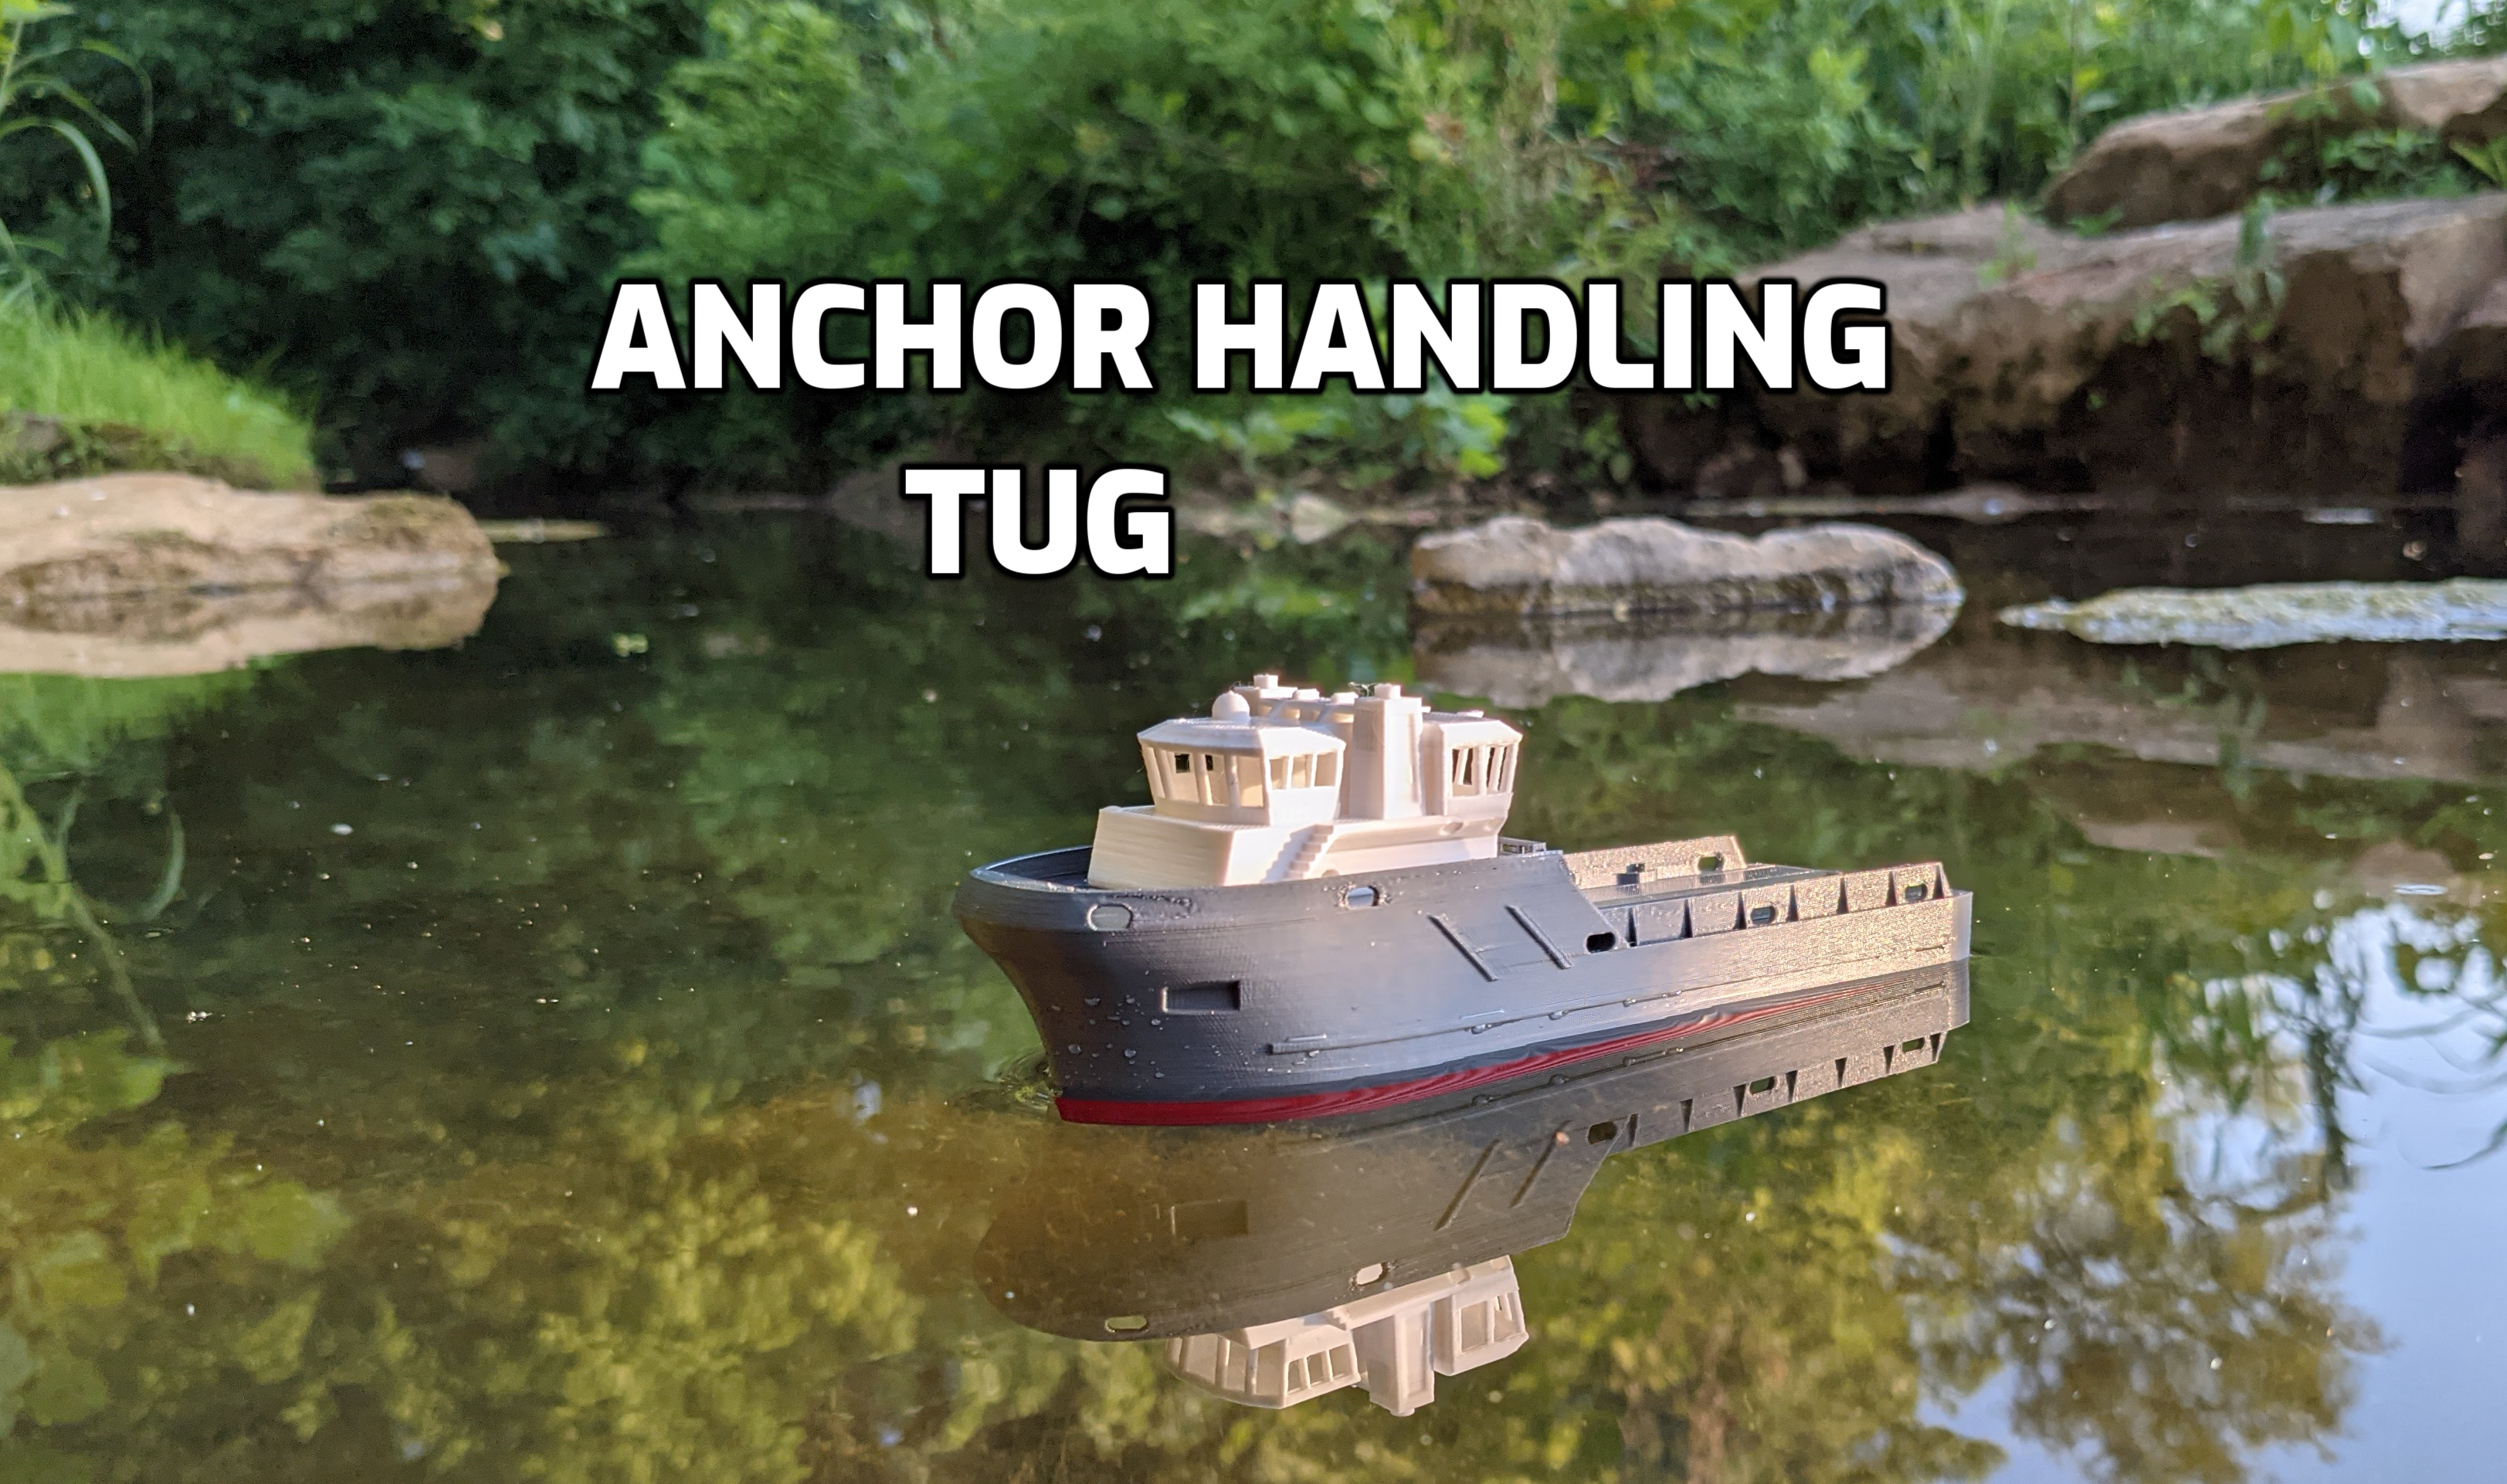 Anchor Handling Tug - Bath Tub Boat